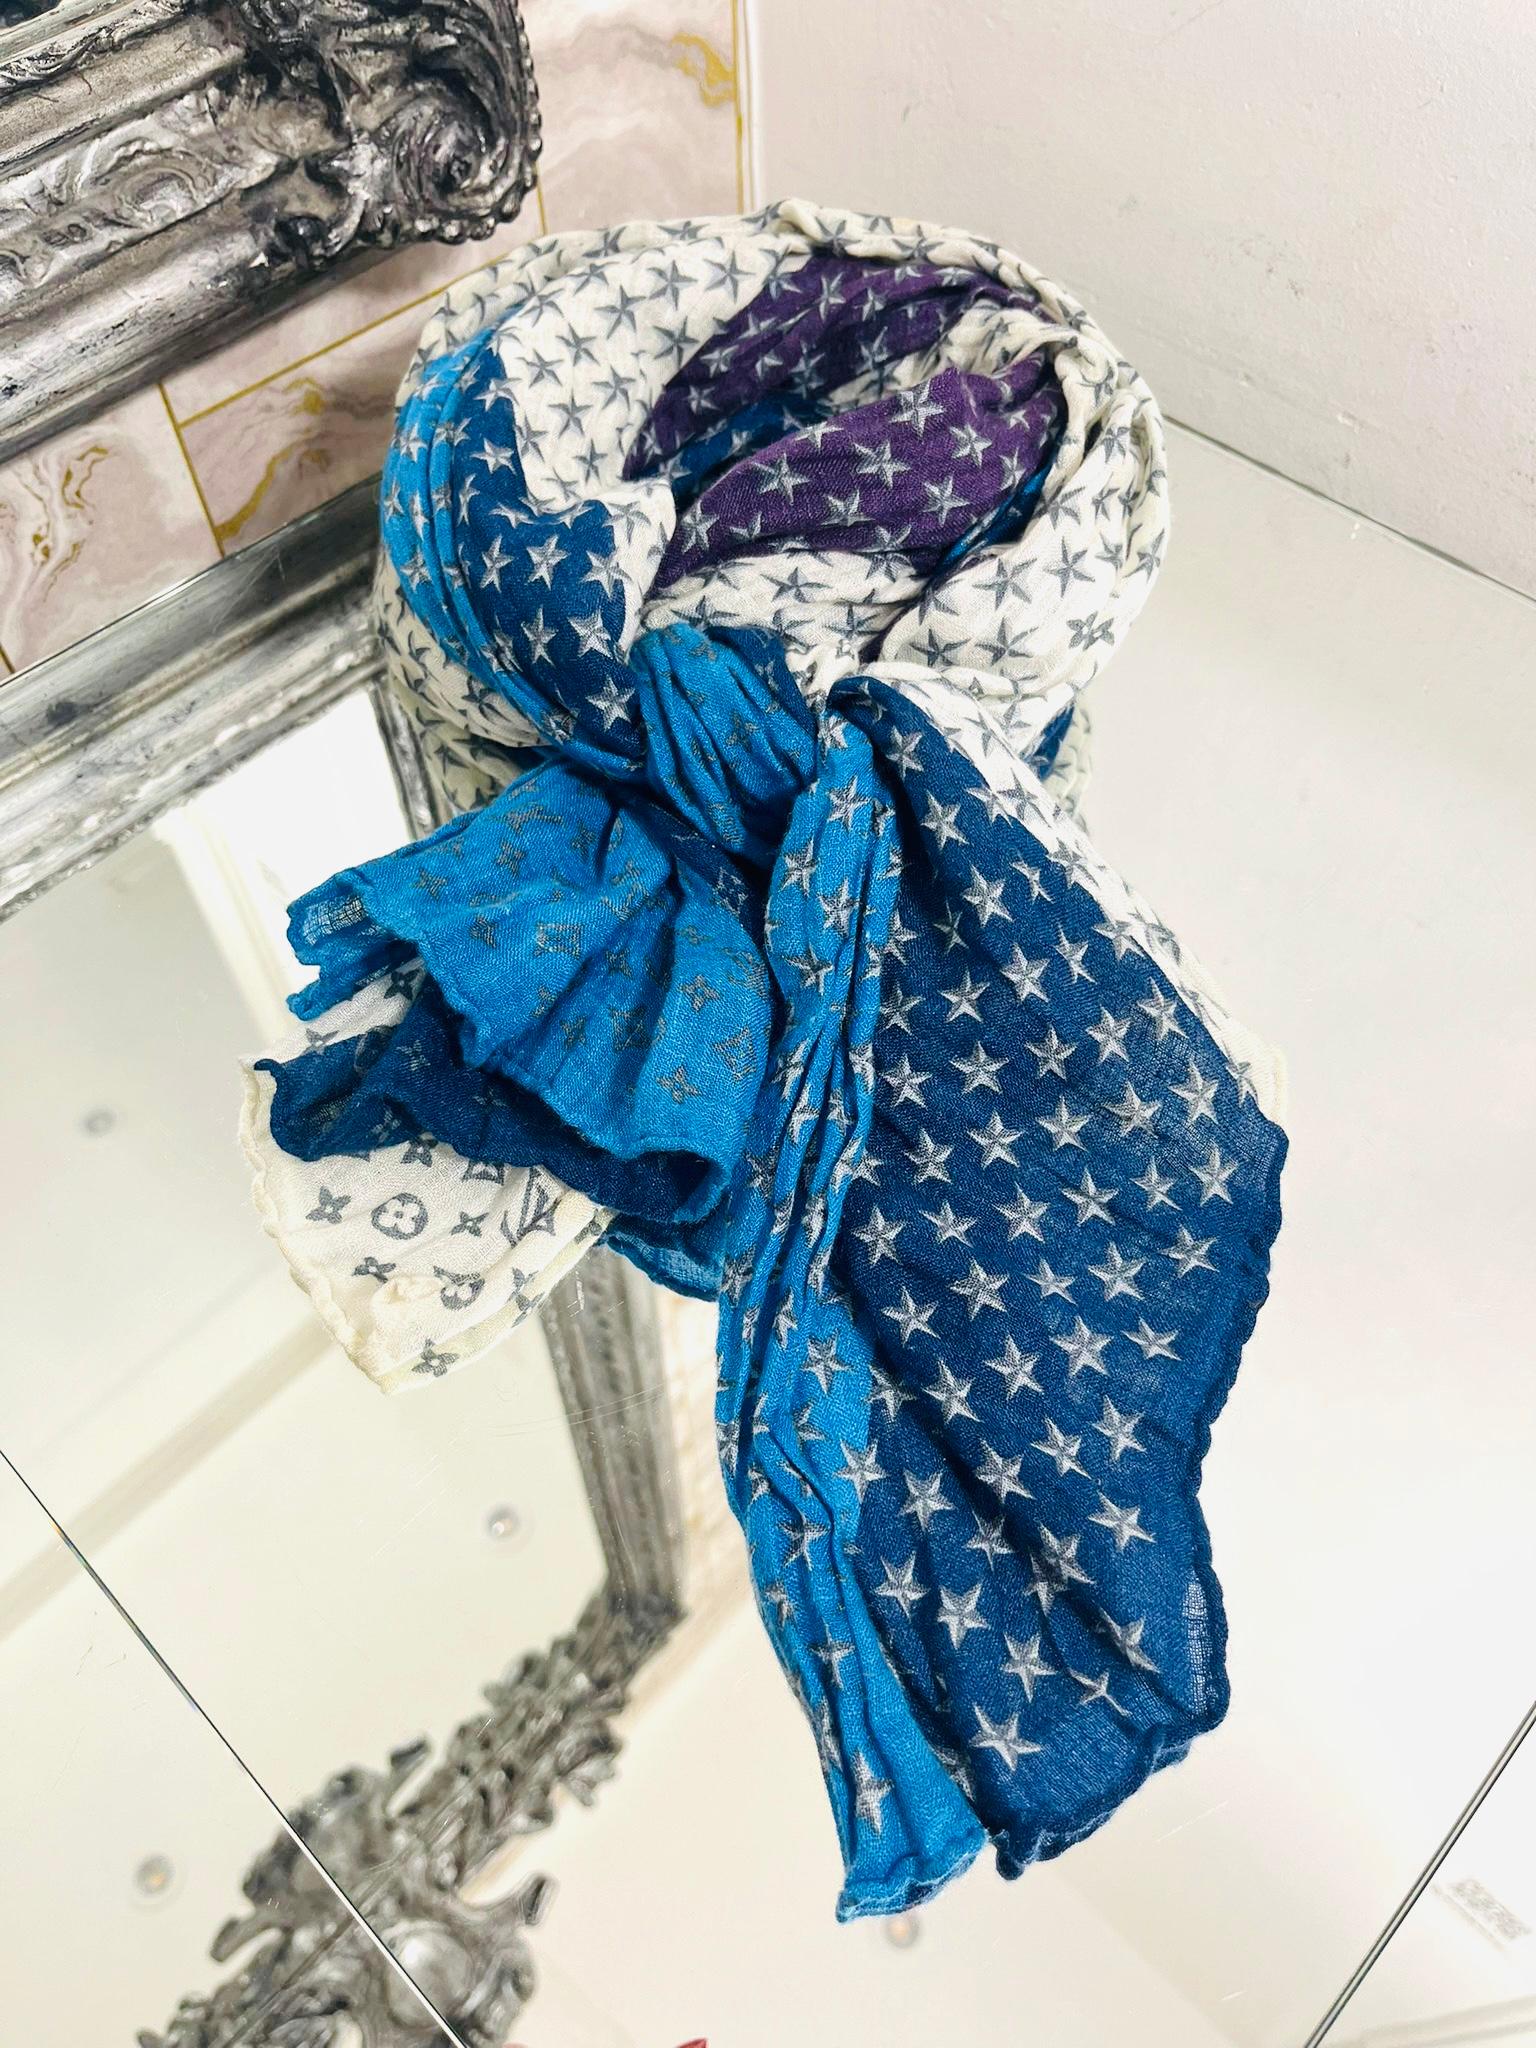 Écharpe en lin et soie Monogram de Louis Vuitton

Écharpe à motif patchwork dans les tons marine, bleu, violet et blanc.

Elle est ornée d'un monogramme emblématique et d'étoiles.

Taille - 57/100cm

Condit - Bon (Petite marque sur le